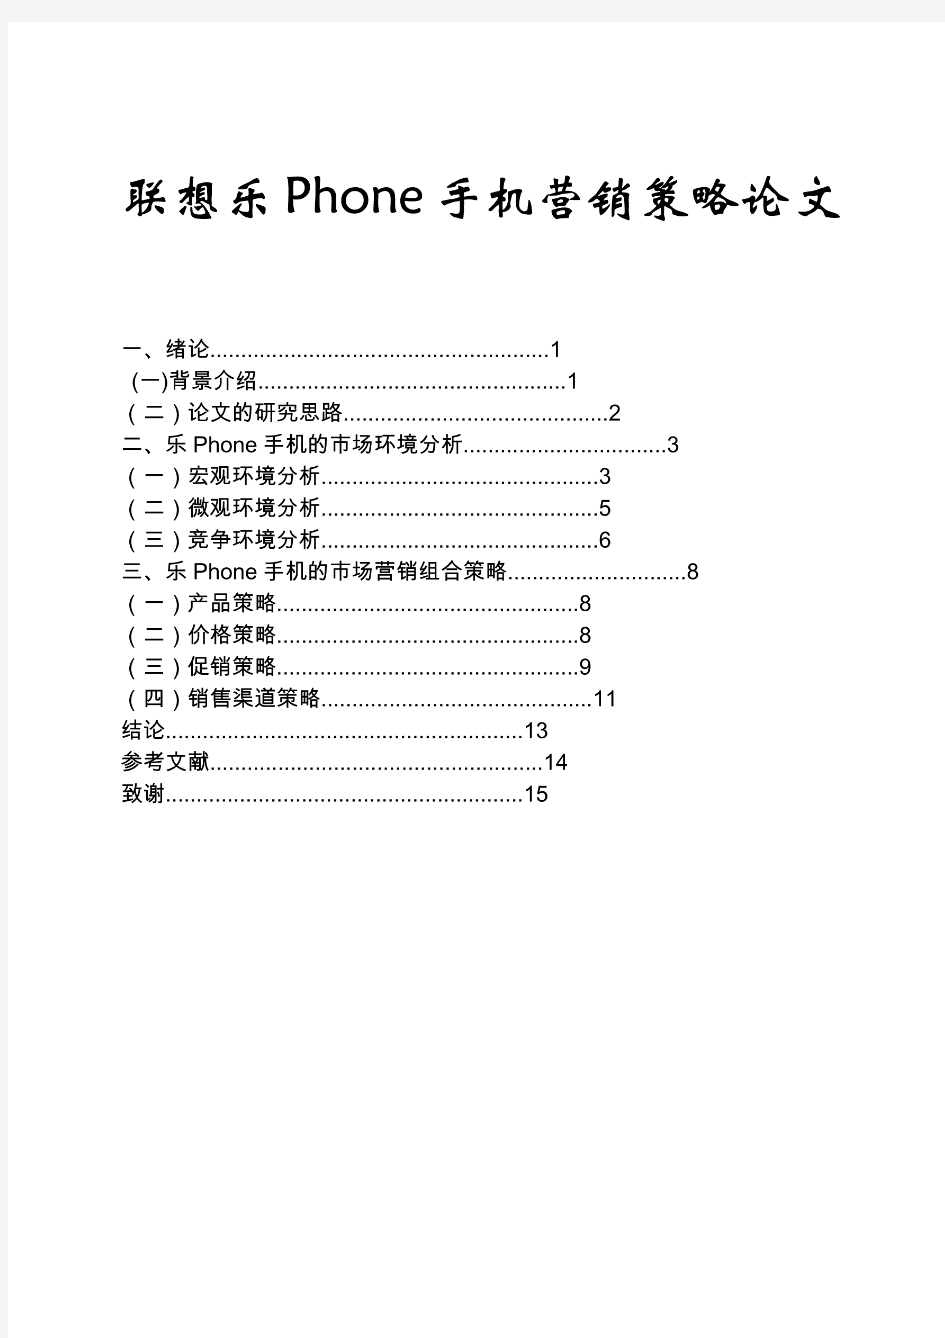 联想乐Phone手机营销策略论文